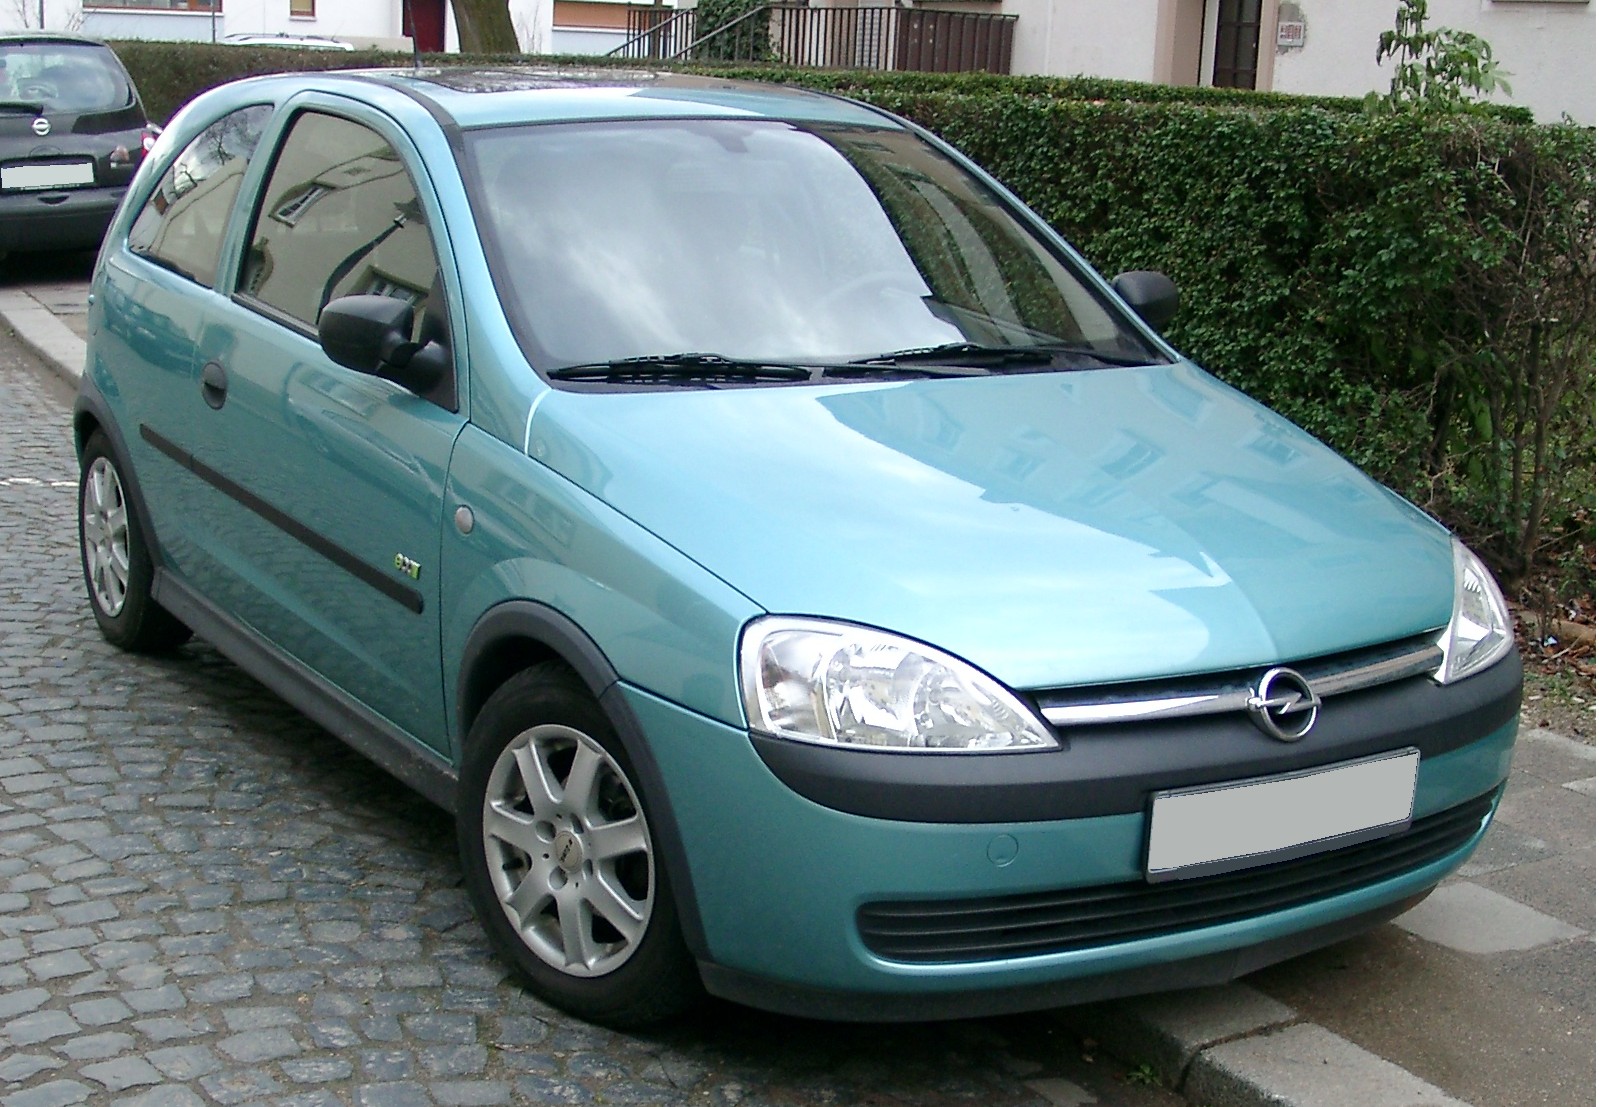 File:Opel Corsa D 1.4 front 20100912.jpg - Wikipedia